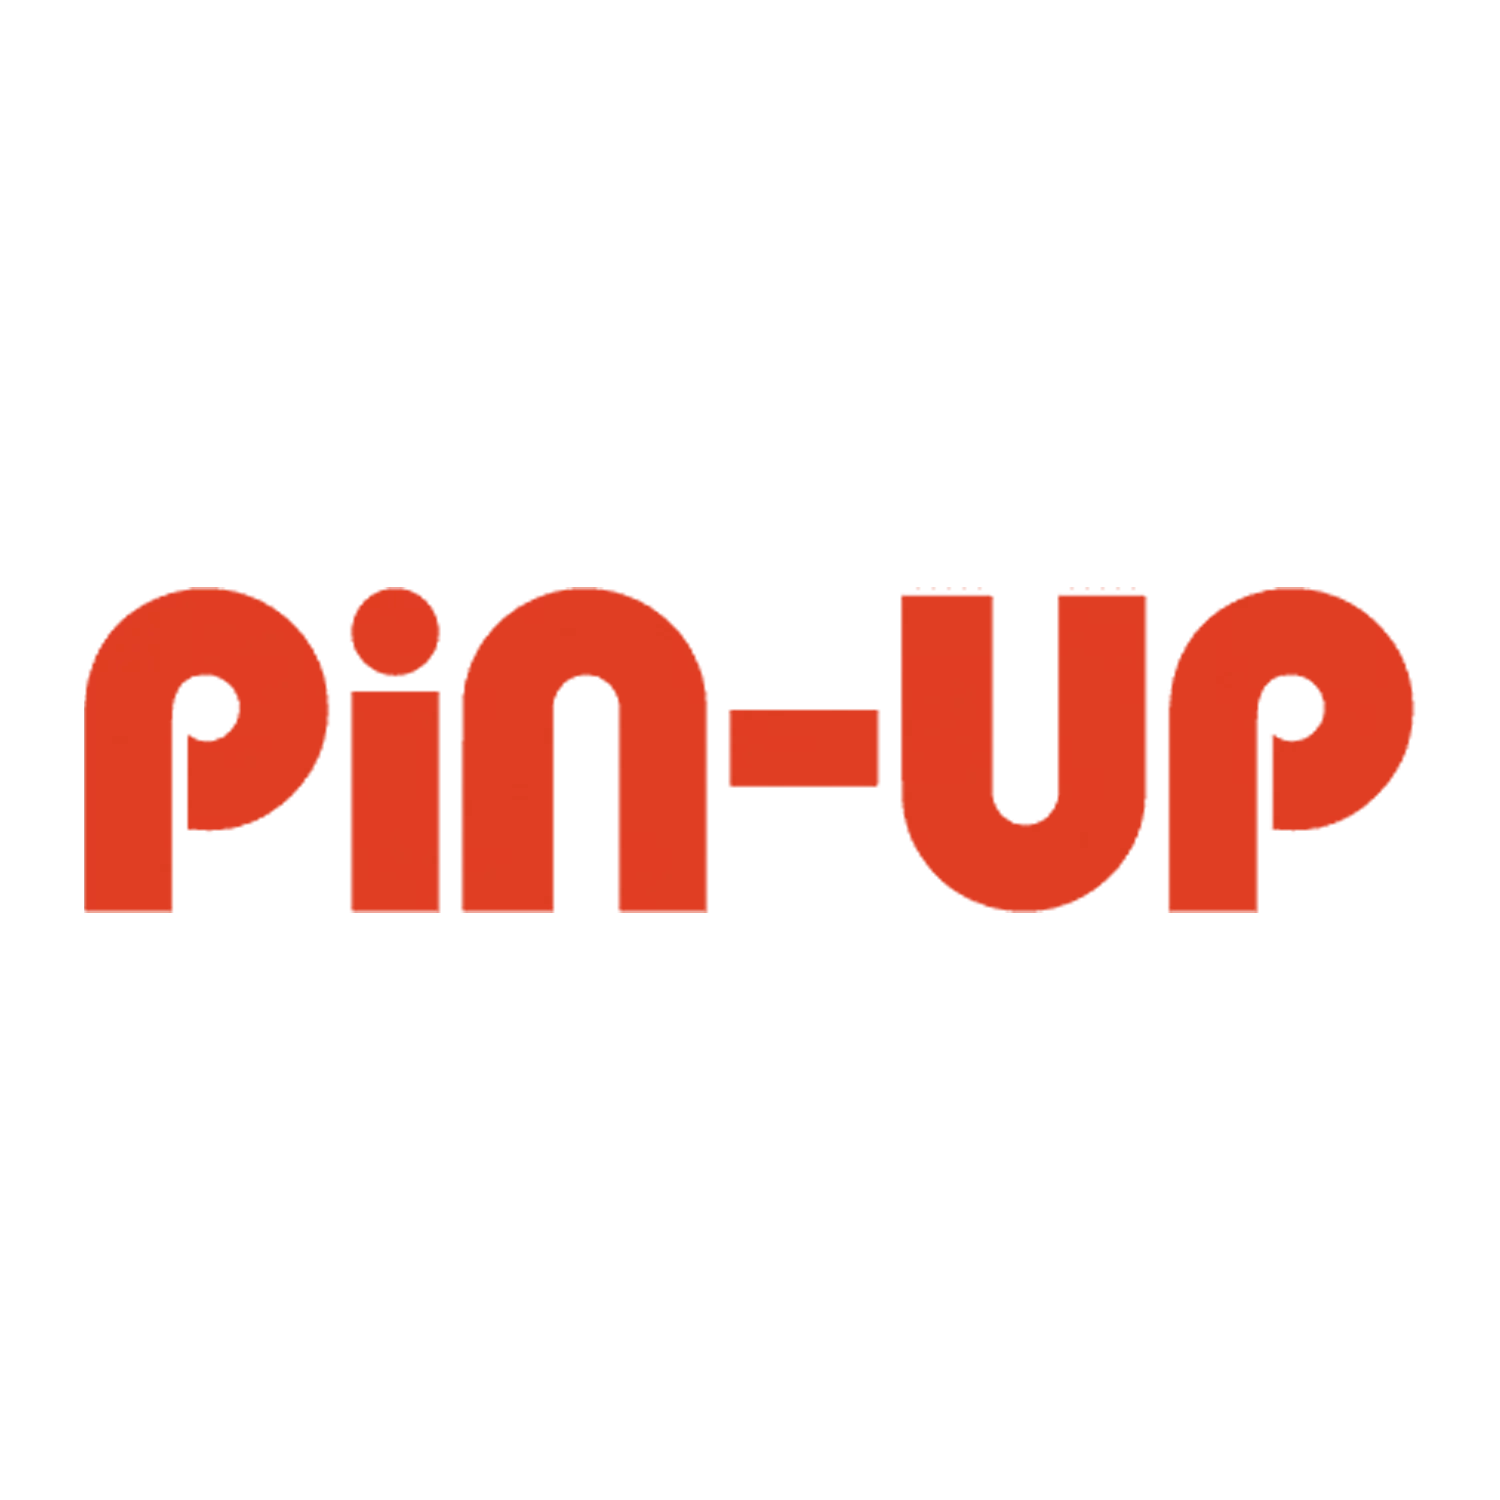 Pin-Up क्रिकेट और अन्य खेलों पर सट्टेबाजी के लिए एक लोकप्रिय साइट है।